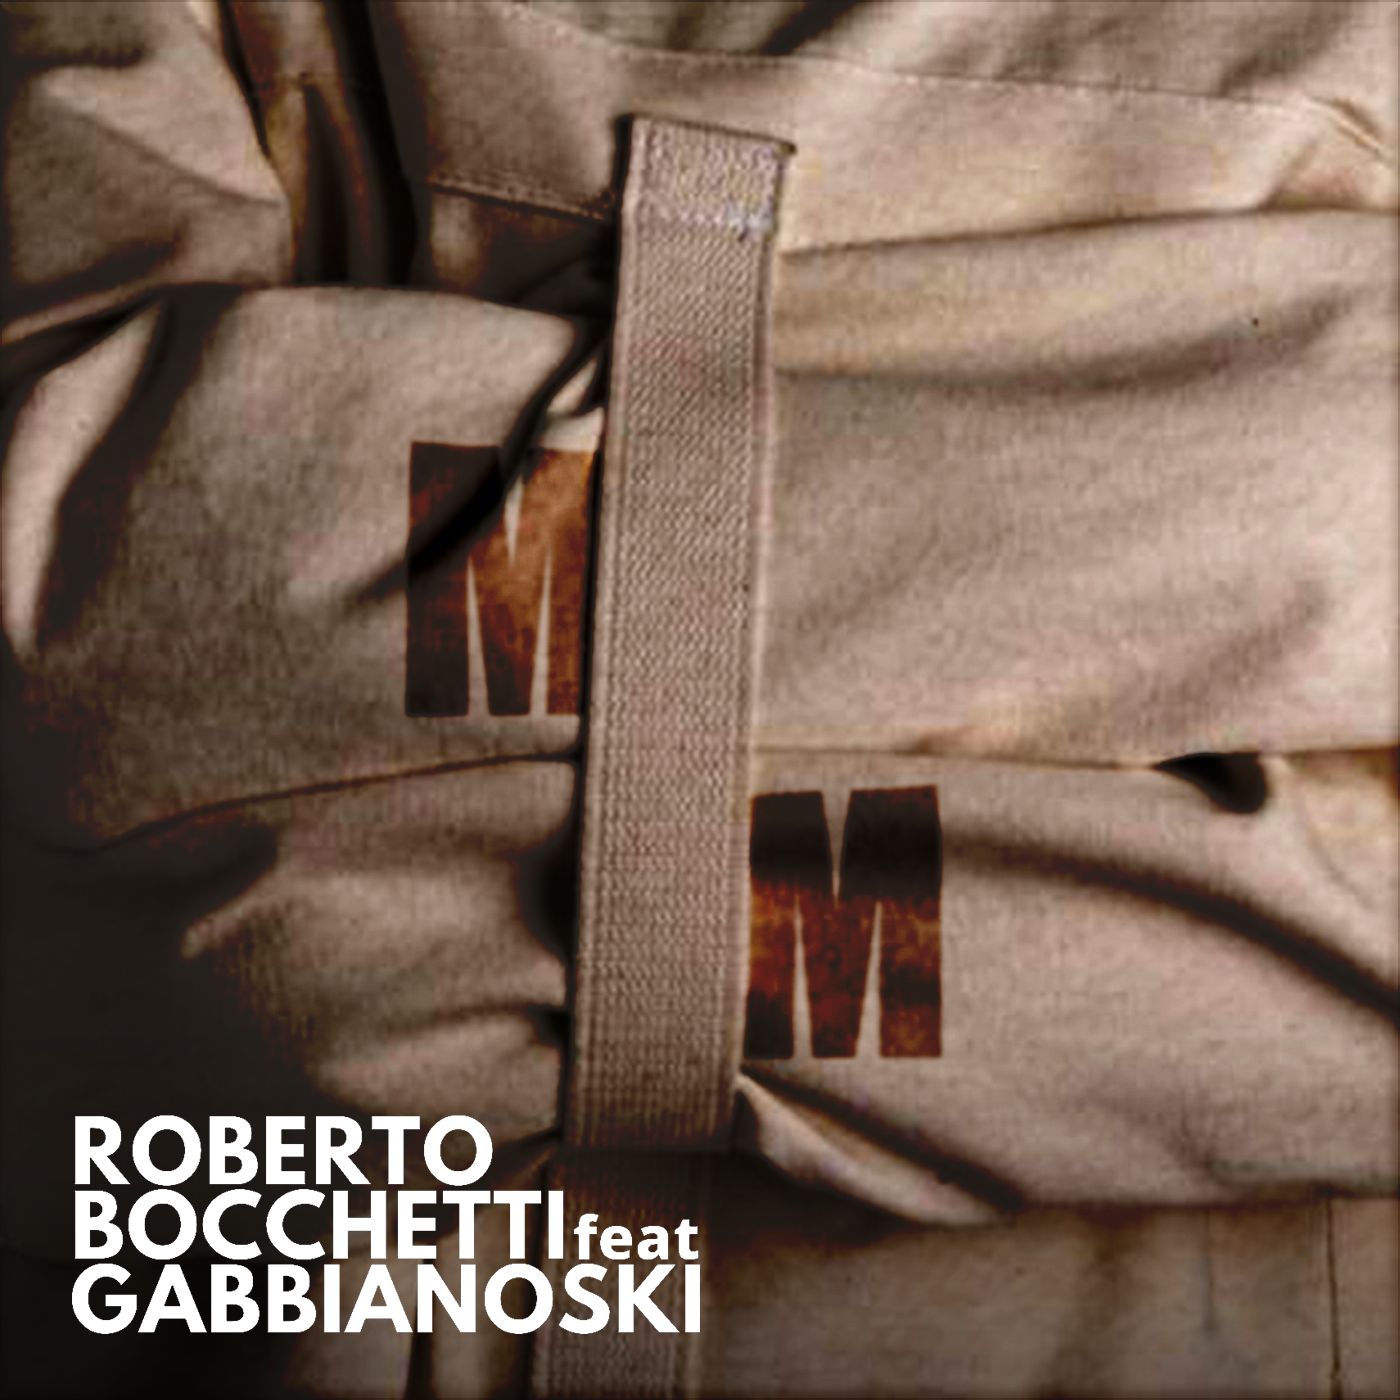 Roberto Bocchetti Feat. Gabbianoski, “MM”, il nuovo singolo fuori il 7 Ottobre